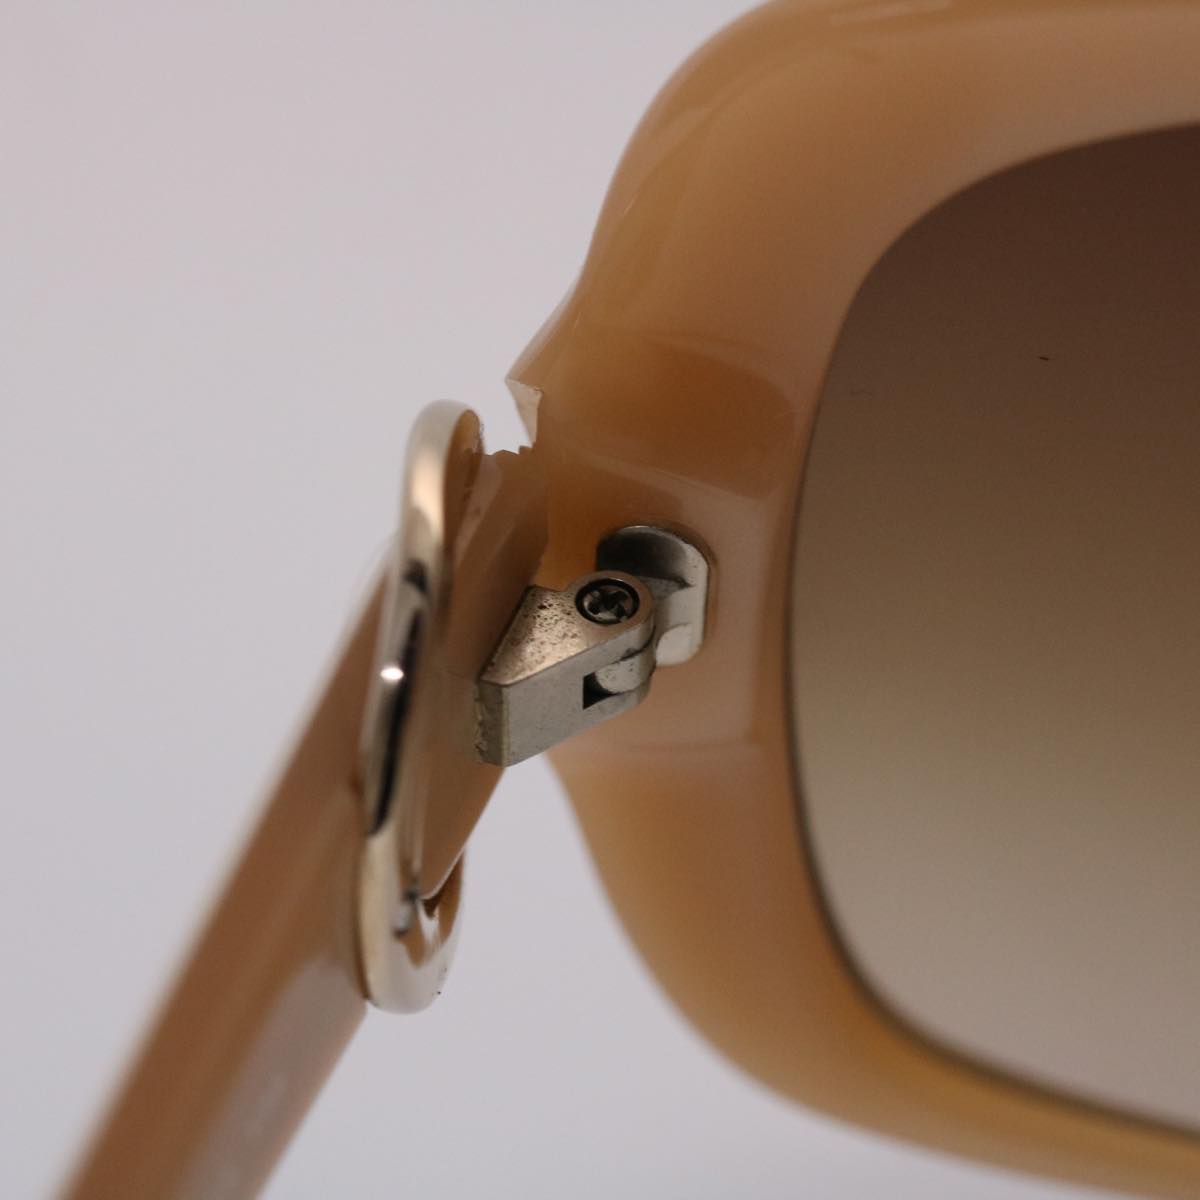 BVLGARI Sunglasses Plastic White Auth ki3176